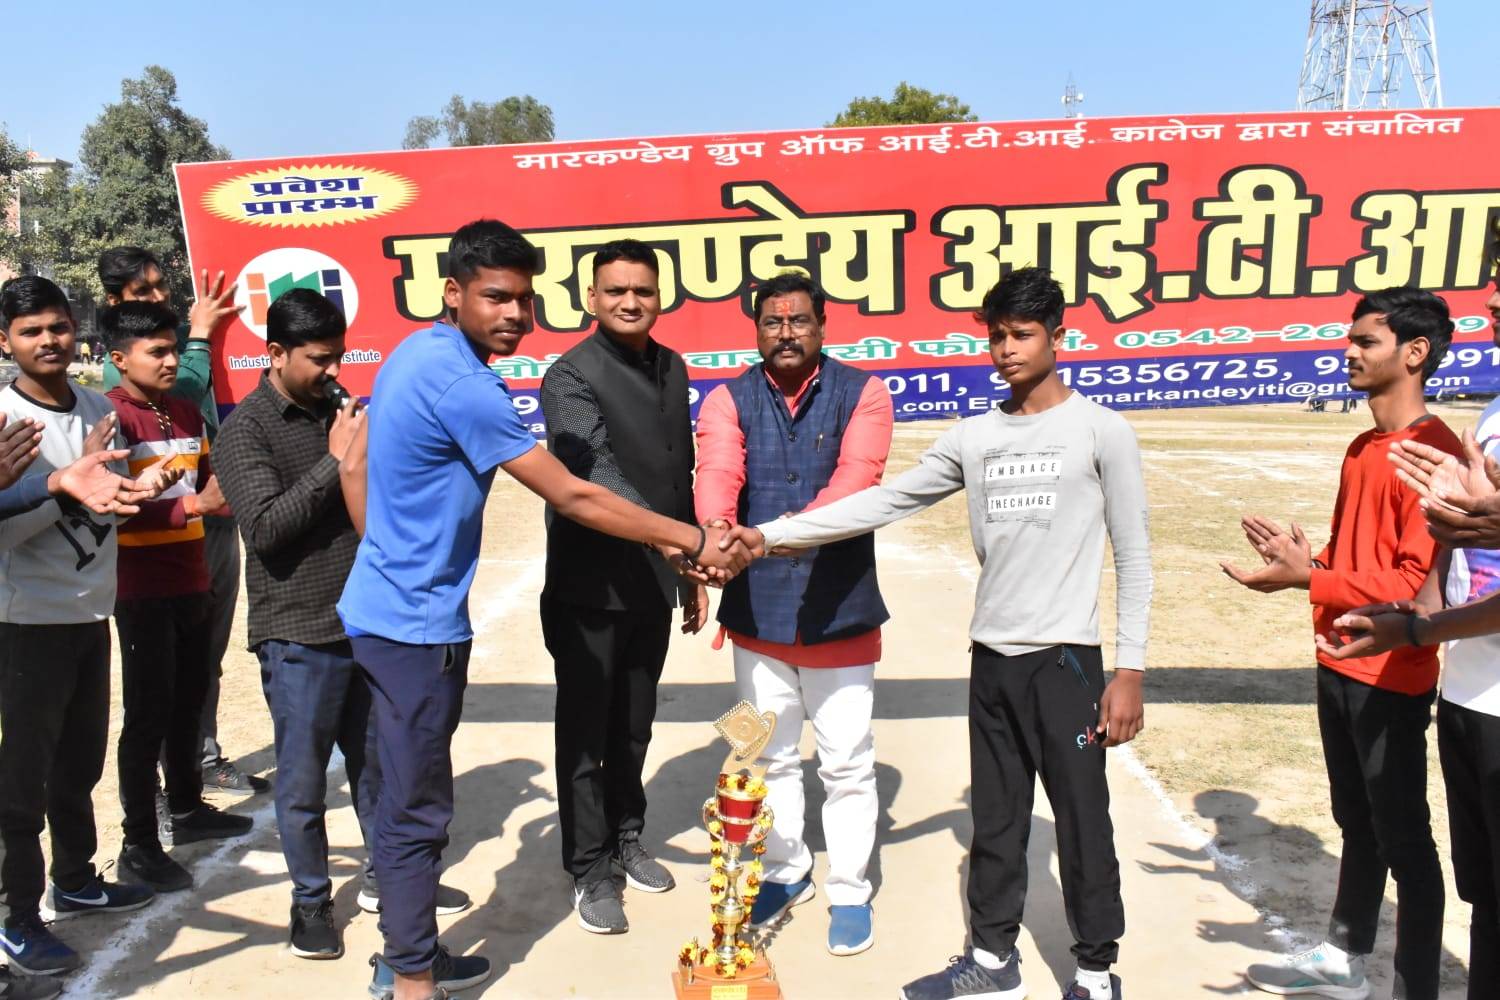 Varanasi News: वाराणसी में अंतर्विद्यालयी खेलकूद प्रतियोगिता में क्रिकेट लीग मैच का आयोजन, कल होगा सेमीफाइनल